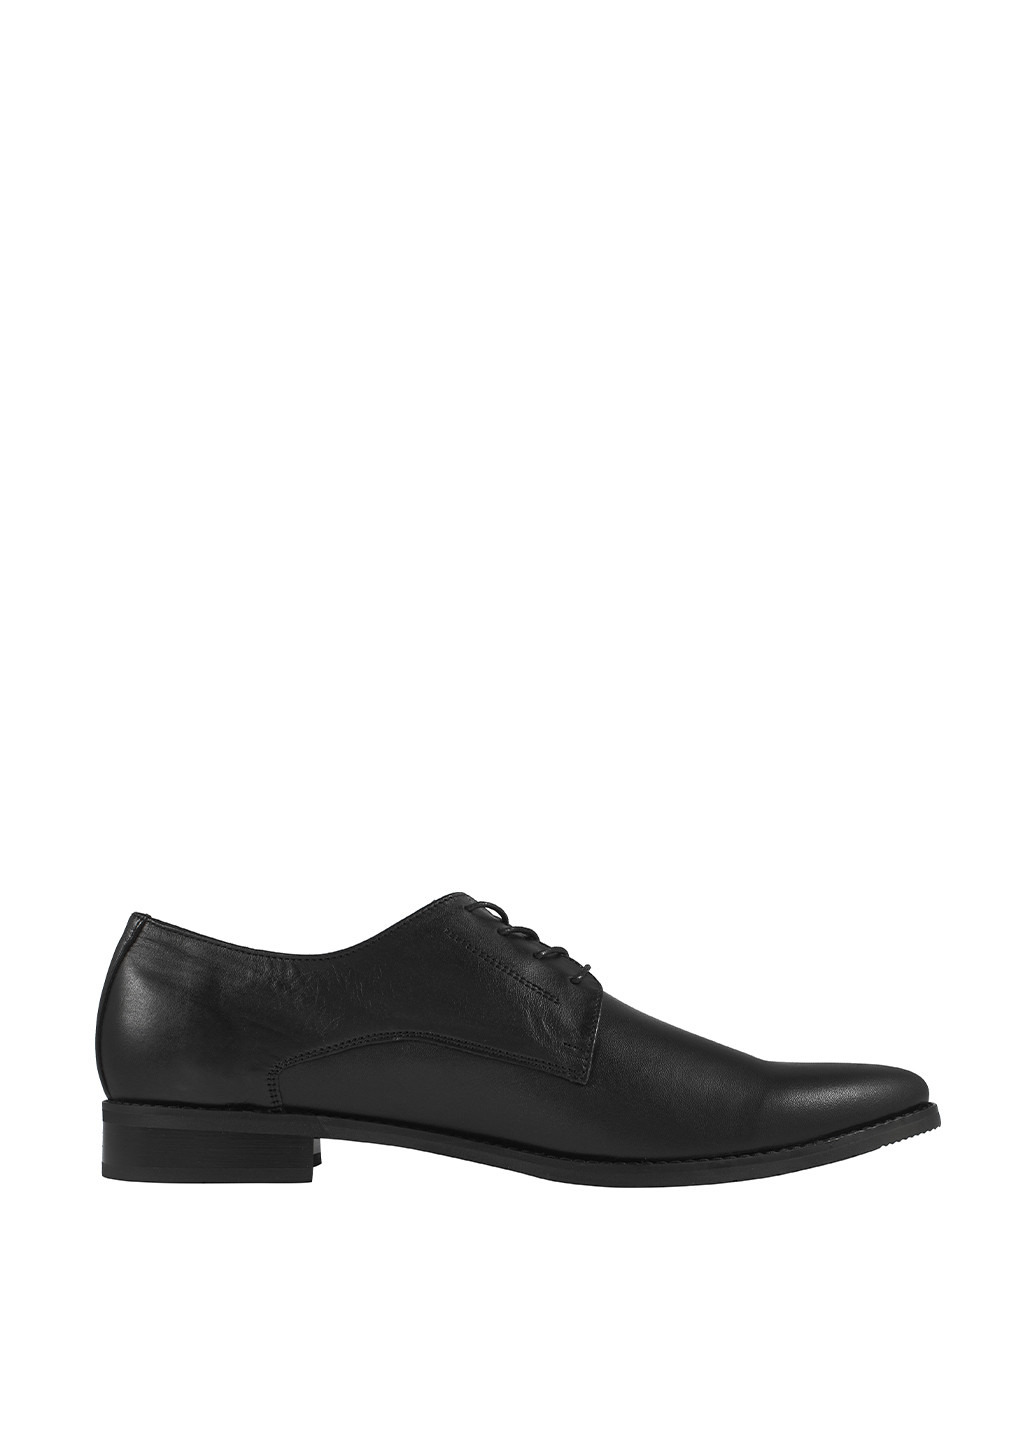 Черные классические туфли Berg на шнурках